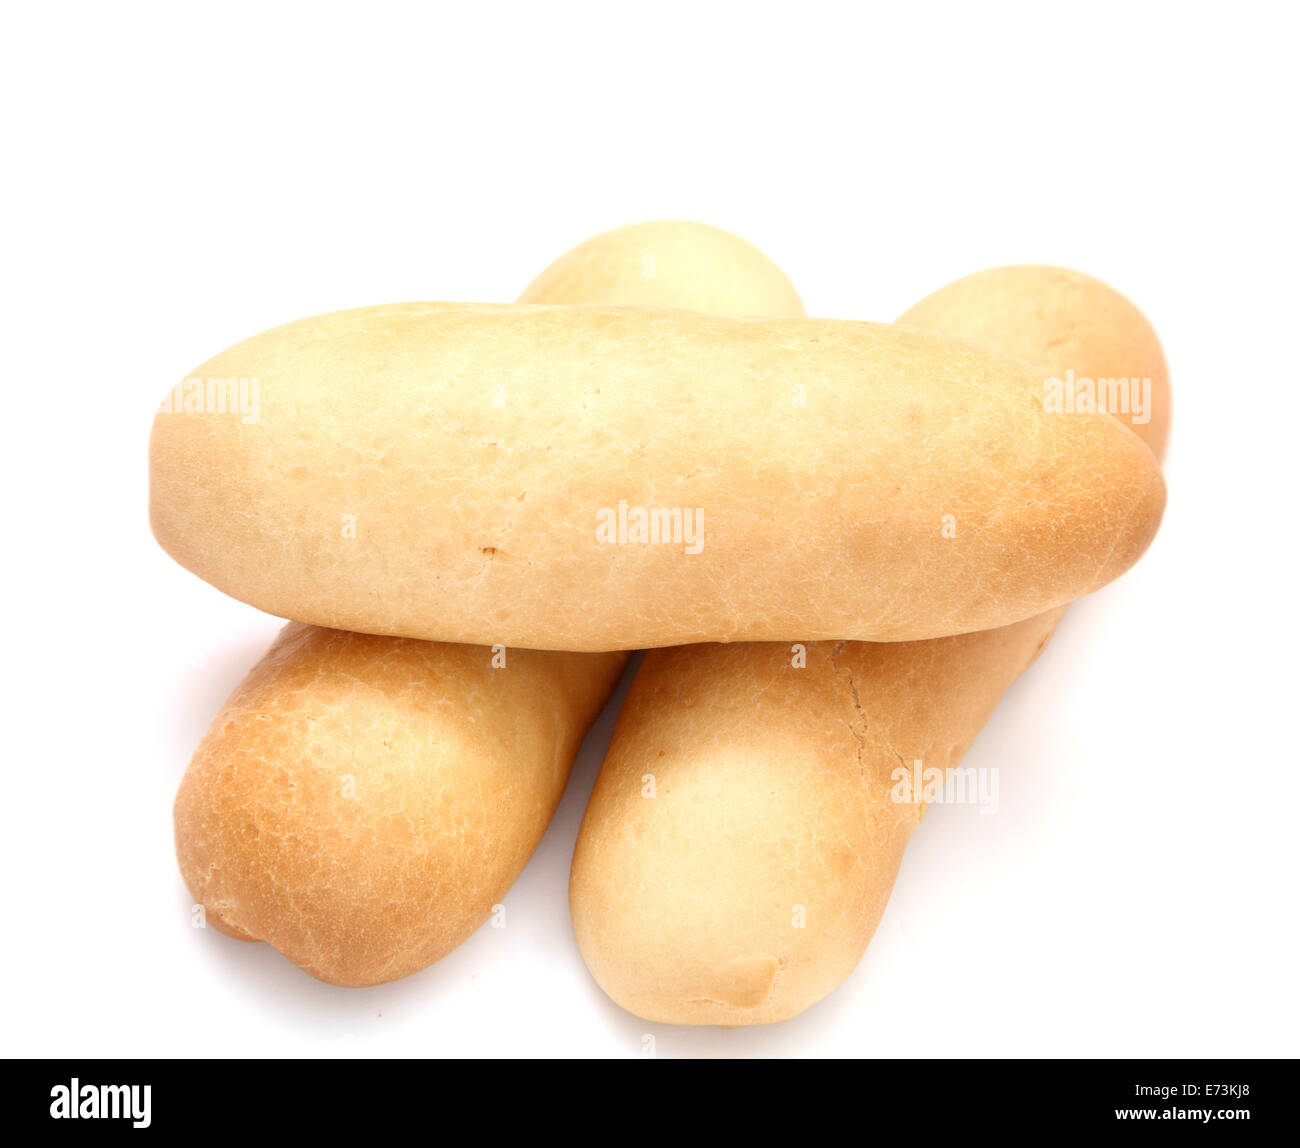 hot dog bun isolated on white Stock Photo